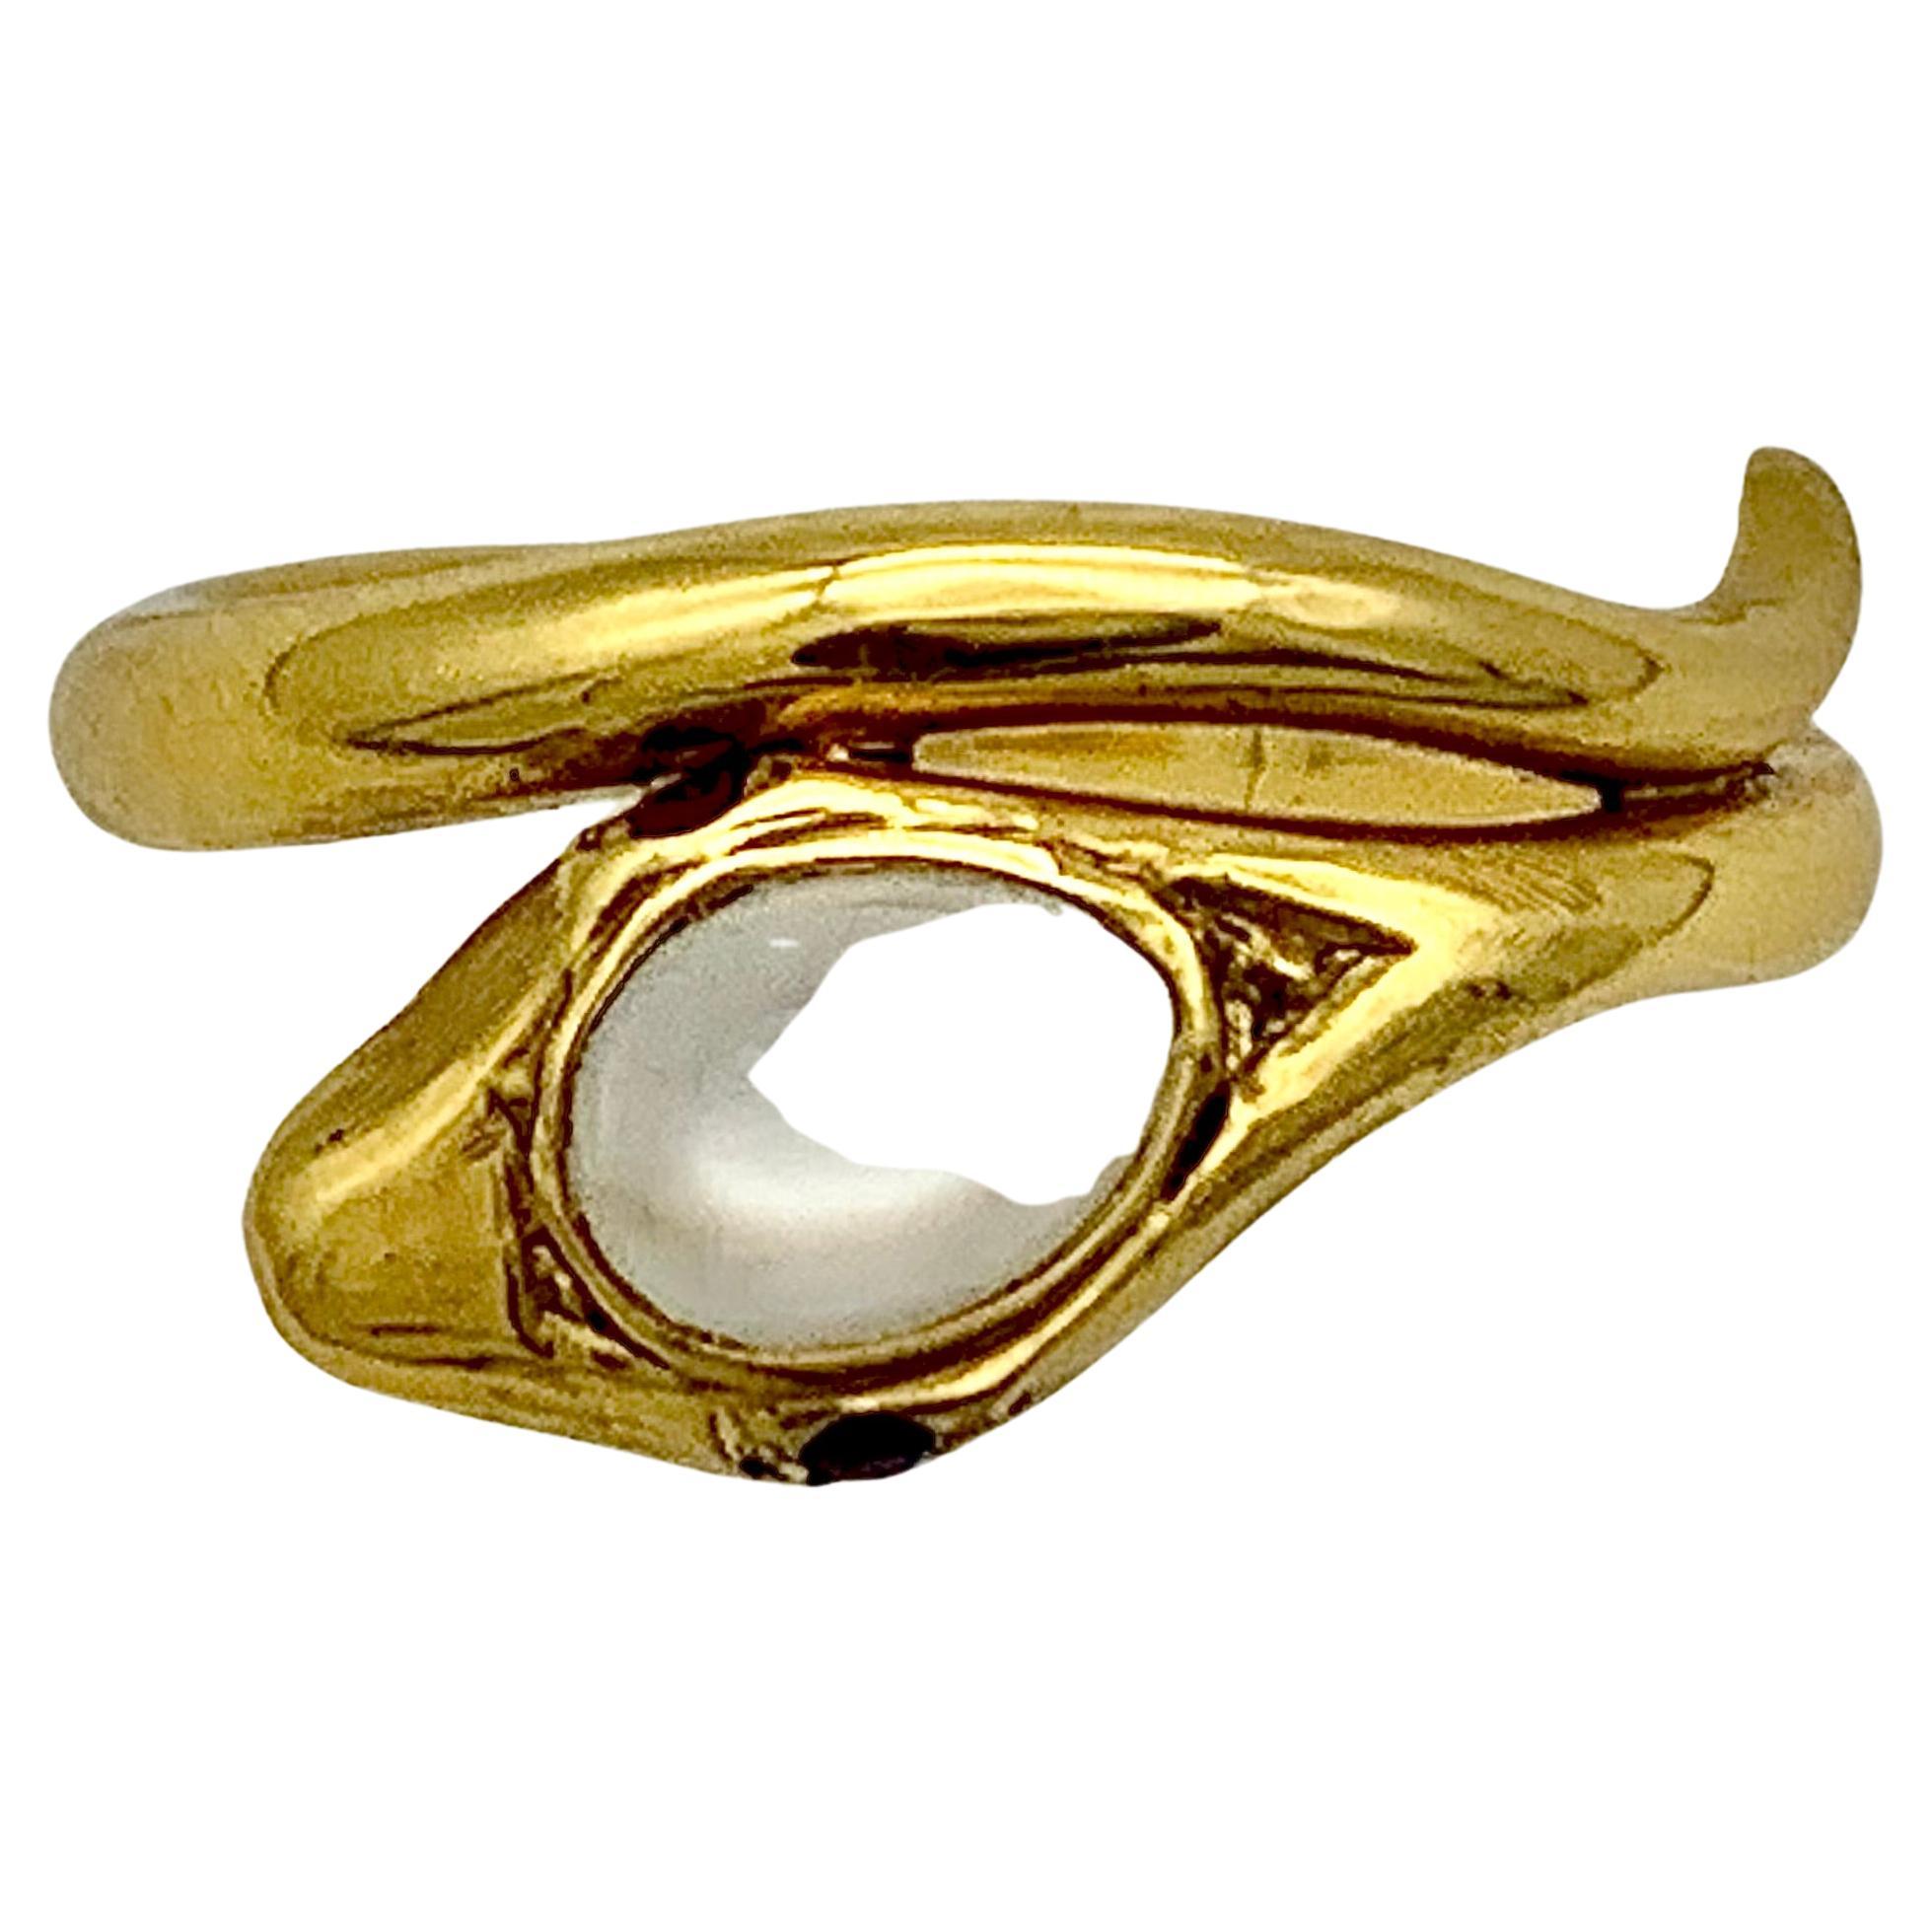 L'anneau en forme de serpent, symbole de l'éternité, était une pièce populaire de la collection.  bijoux. Les bijoux à message sentimental ont connu une grande popularité à une époque où les sentiments devaient souvent être transmis en secret. Le